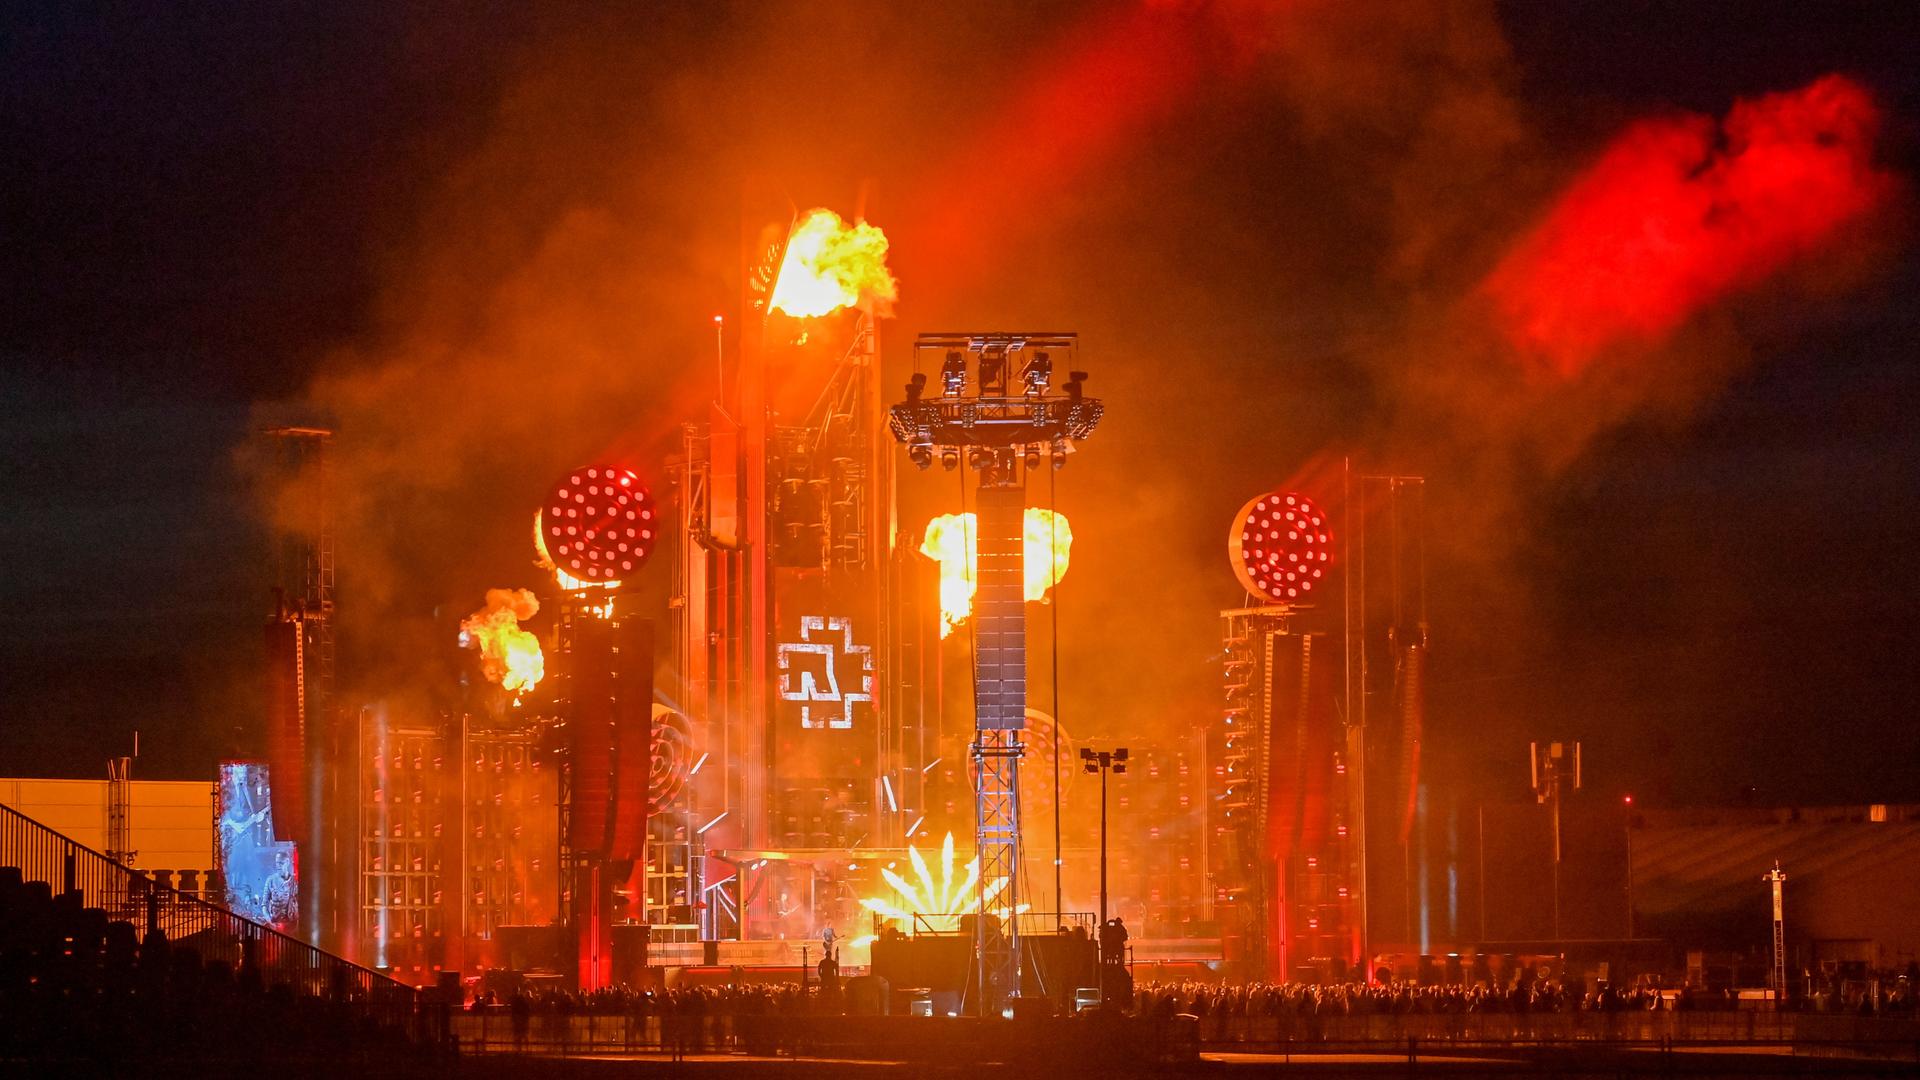 Stahlgerüste, Pyrotechnik und Rauch dominieren die Bühne von Rammstein.